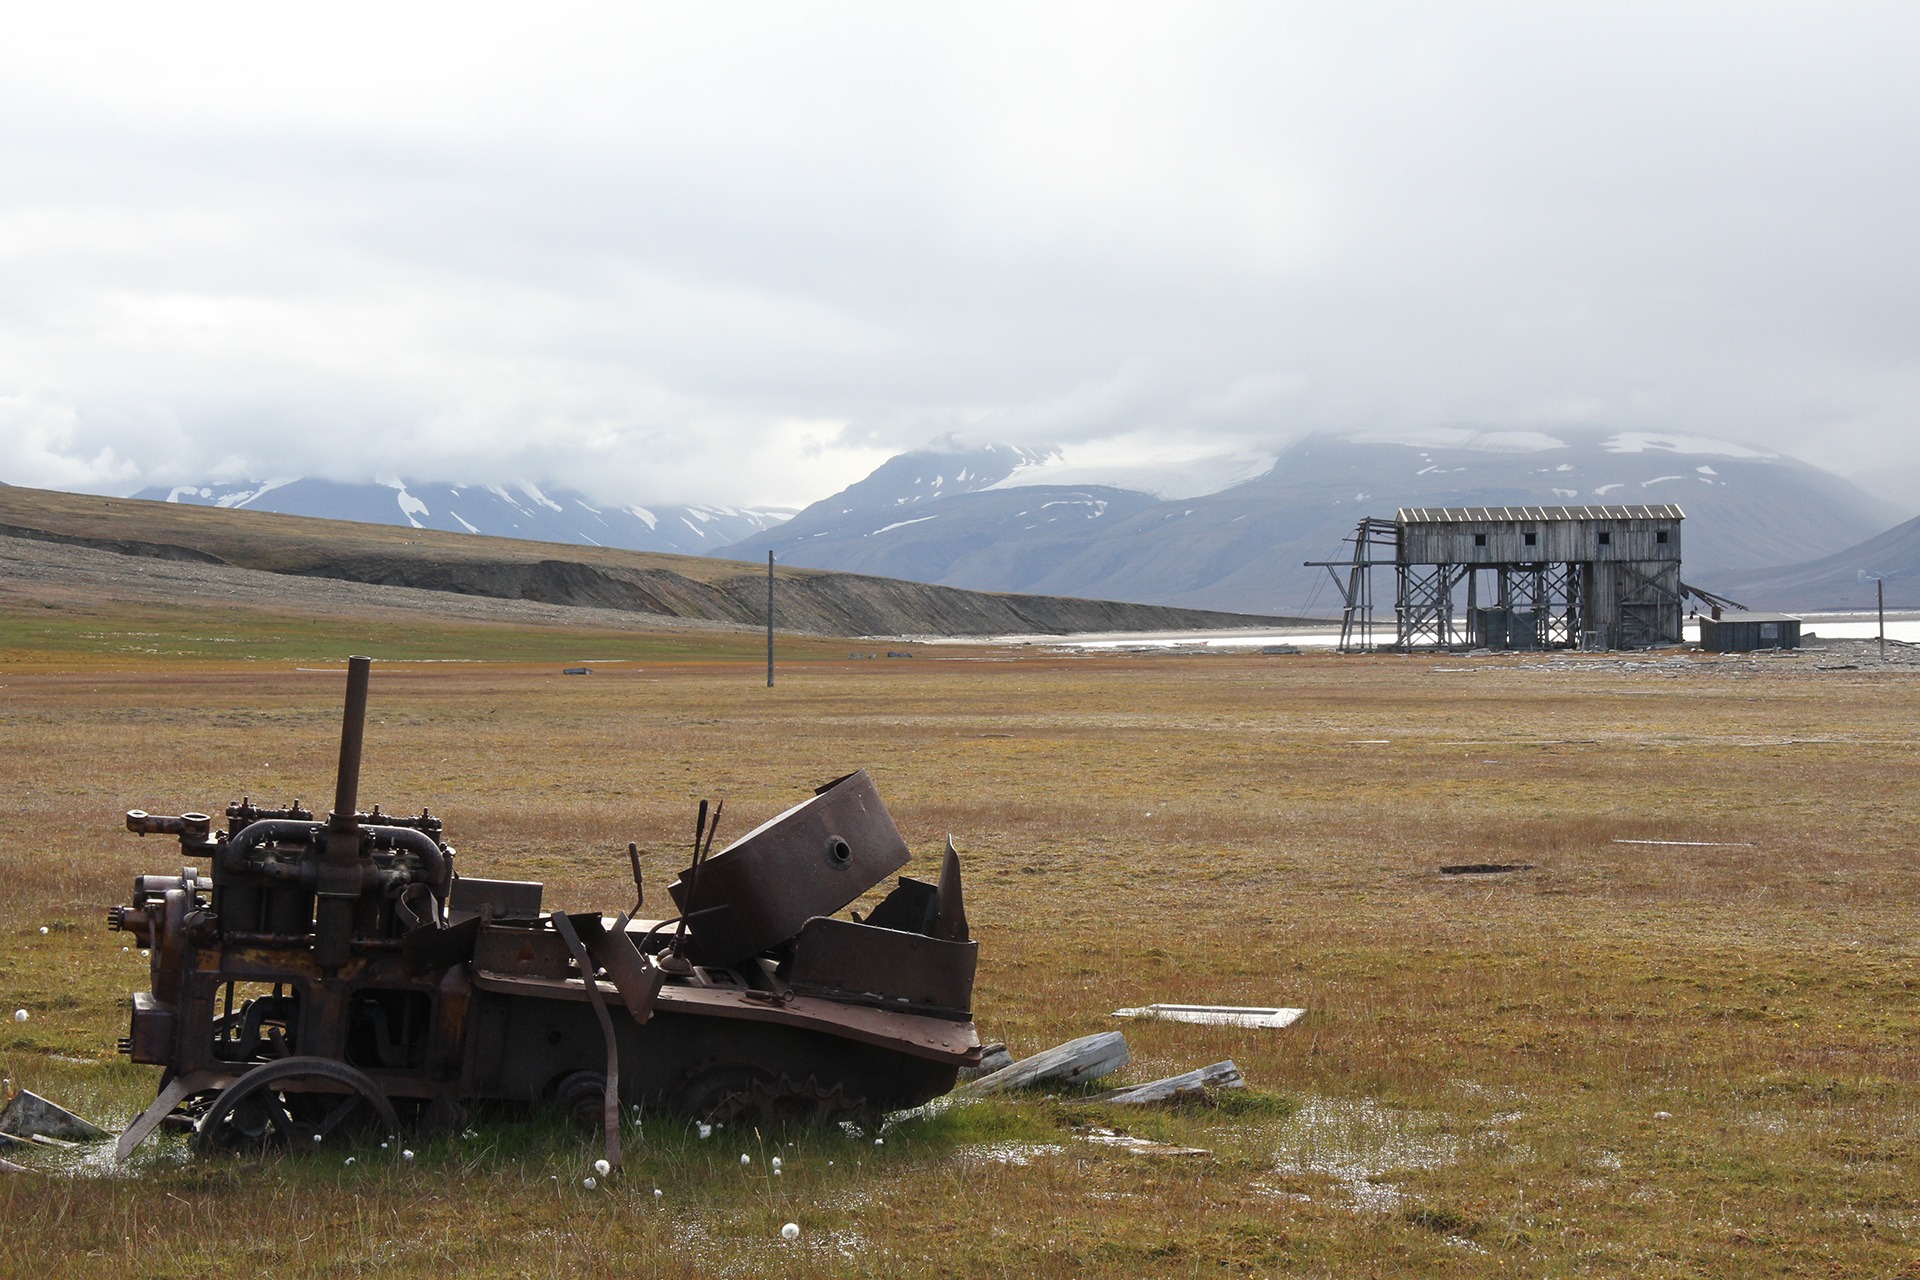 Nest etter Ny-Ålesund er det Hiorthhamn som har den største ansamlingen av fredete kulturminner på Svalbard. Taubanen i bakgrunnen på bildet er ett av mange fredete kulturminner her. Foto: Siri Wolland Riksantikvaren